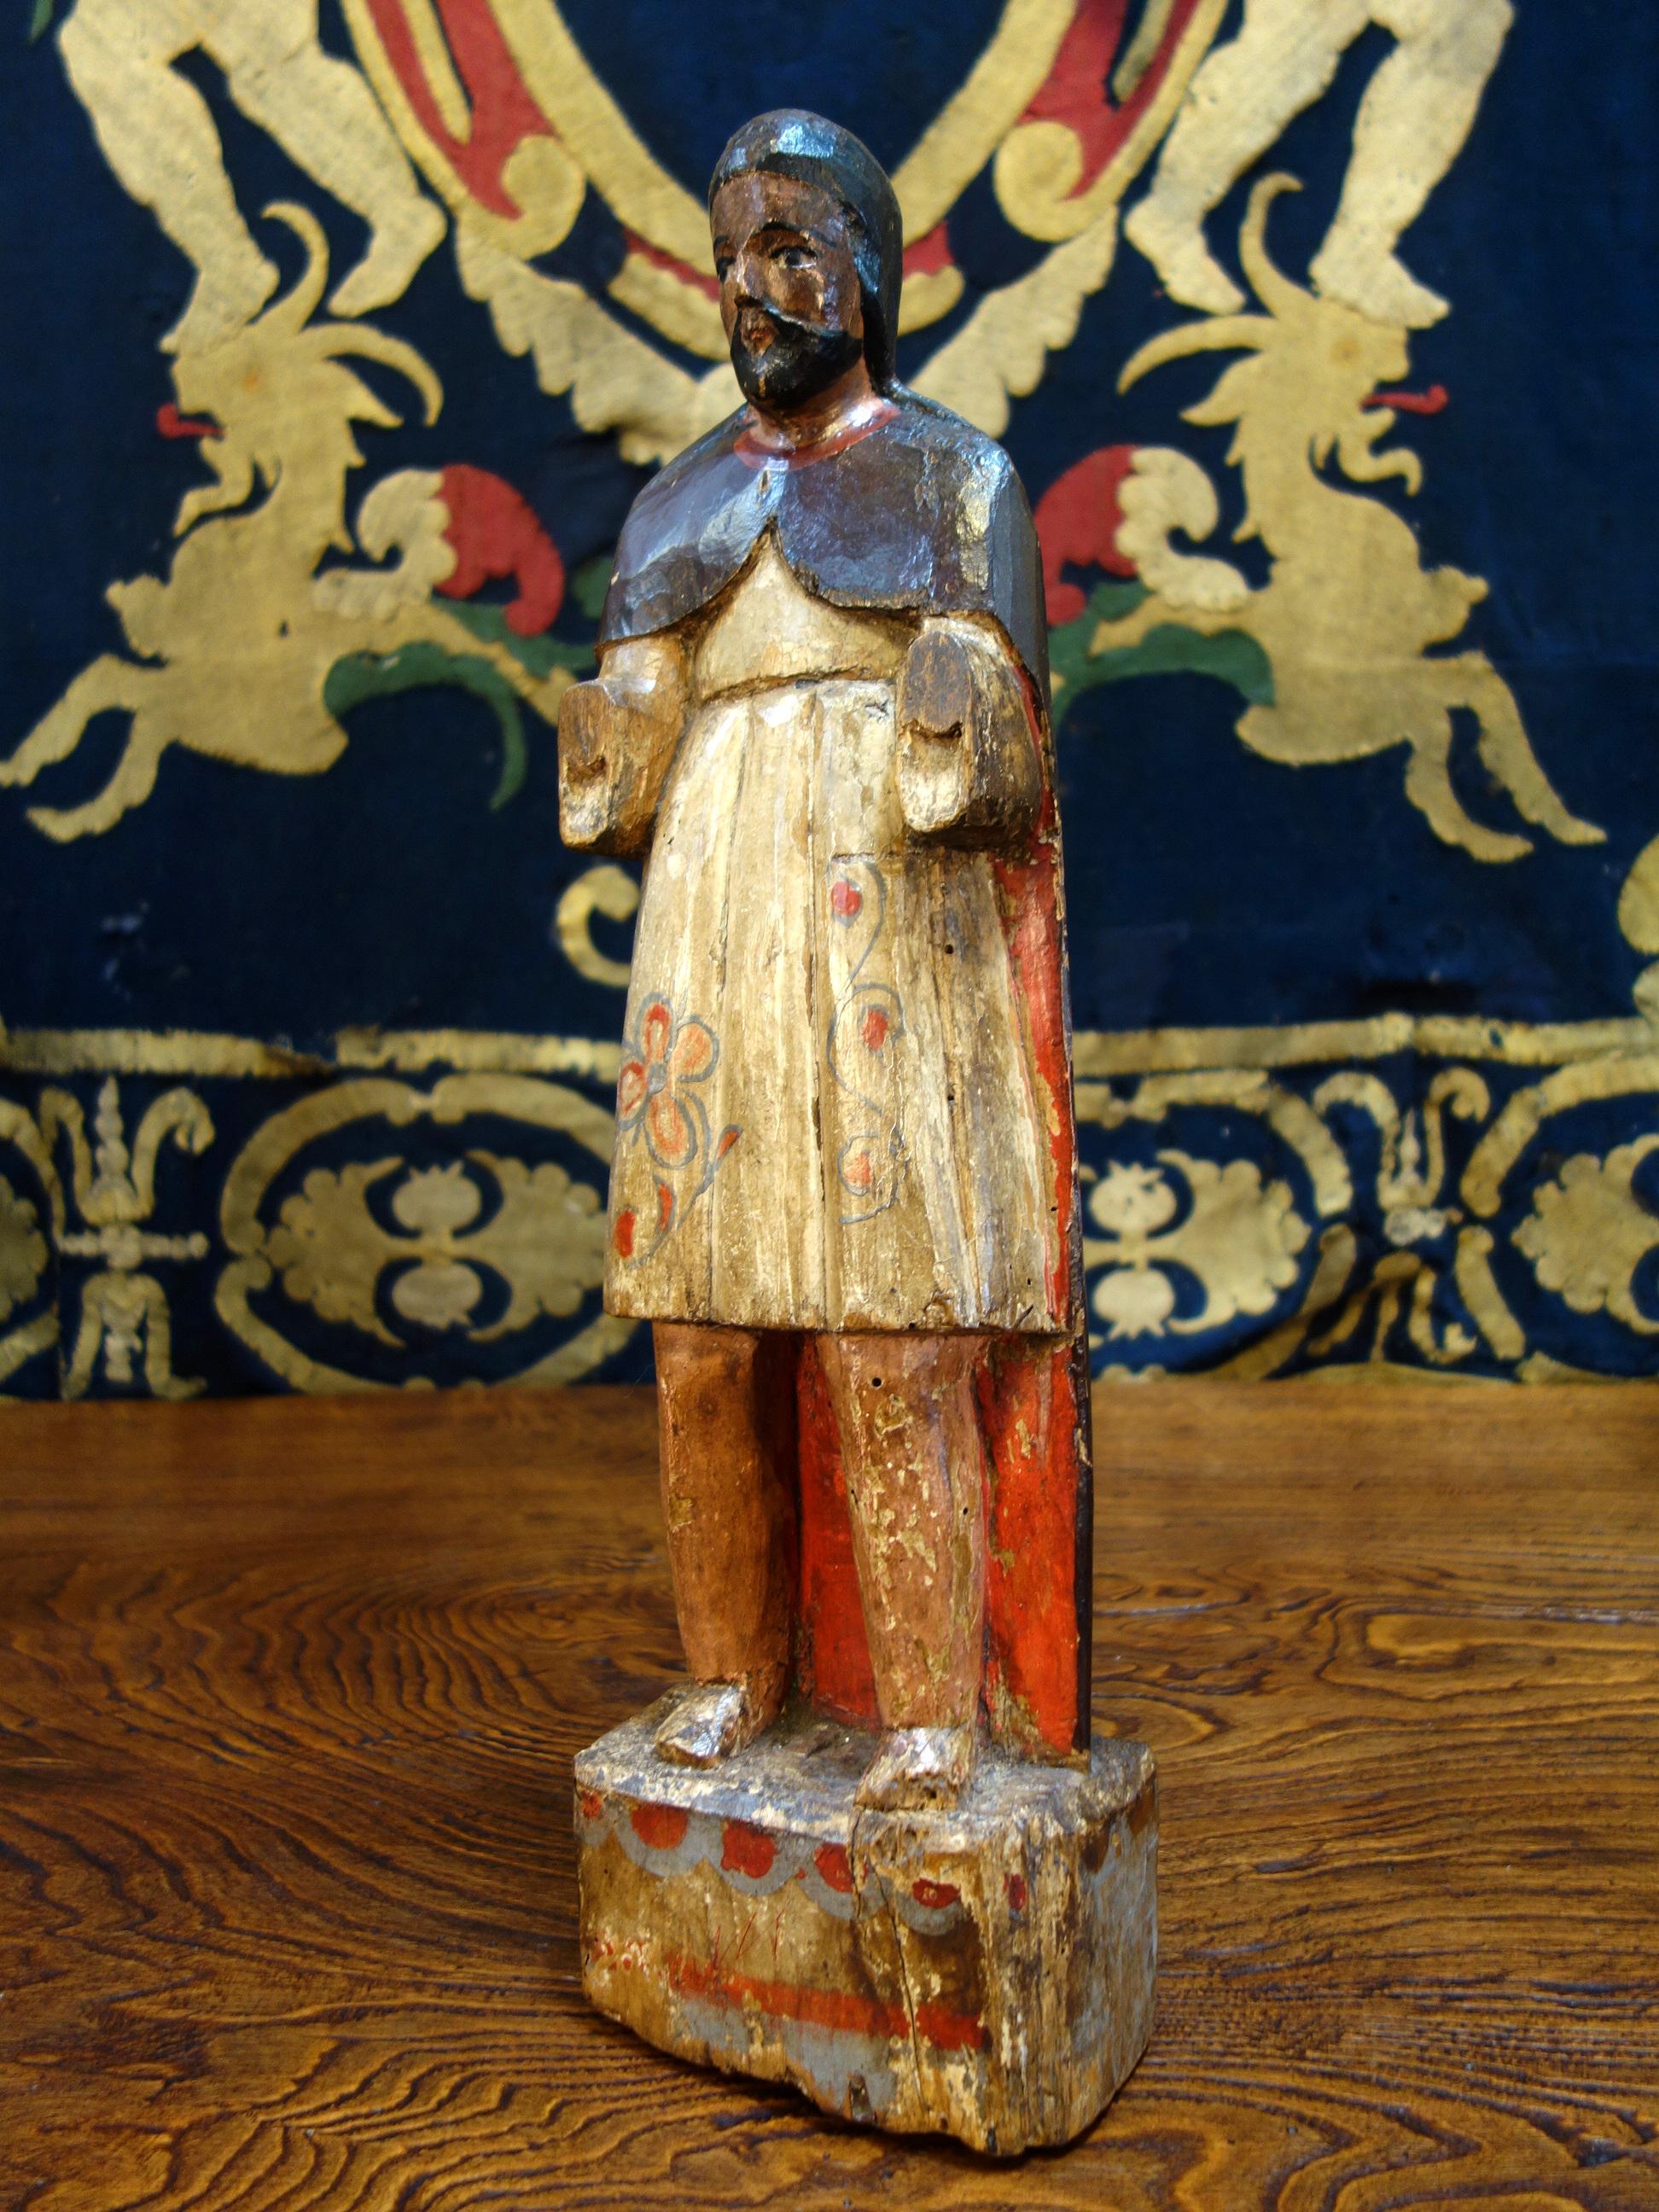 Italienische handgeschnitzte und bemalte primitive männliche Santos-Holzskulptur aus dem 19. Jahrhundert, um 1840.

Maße: 22,2